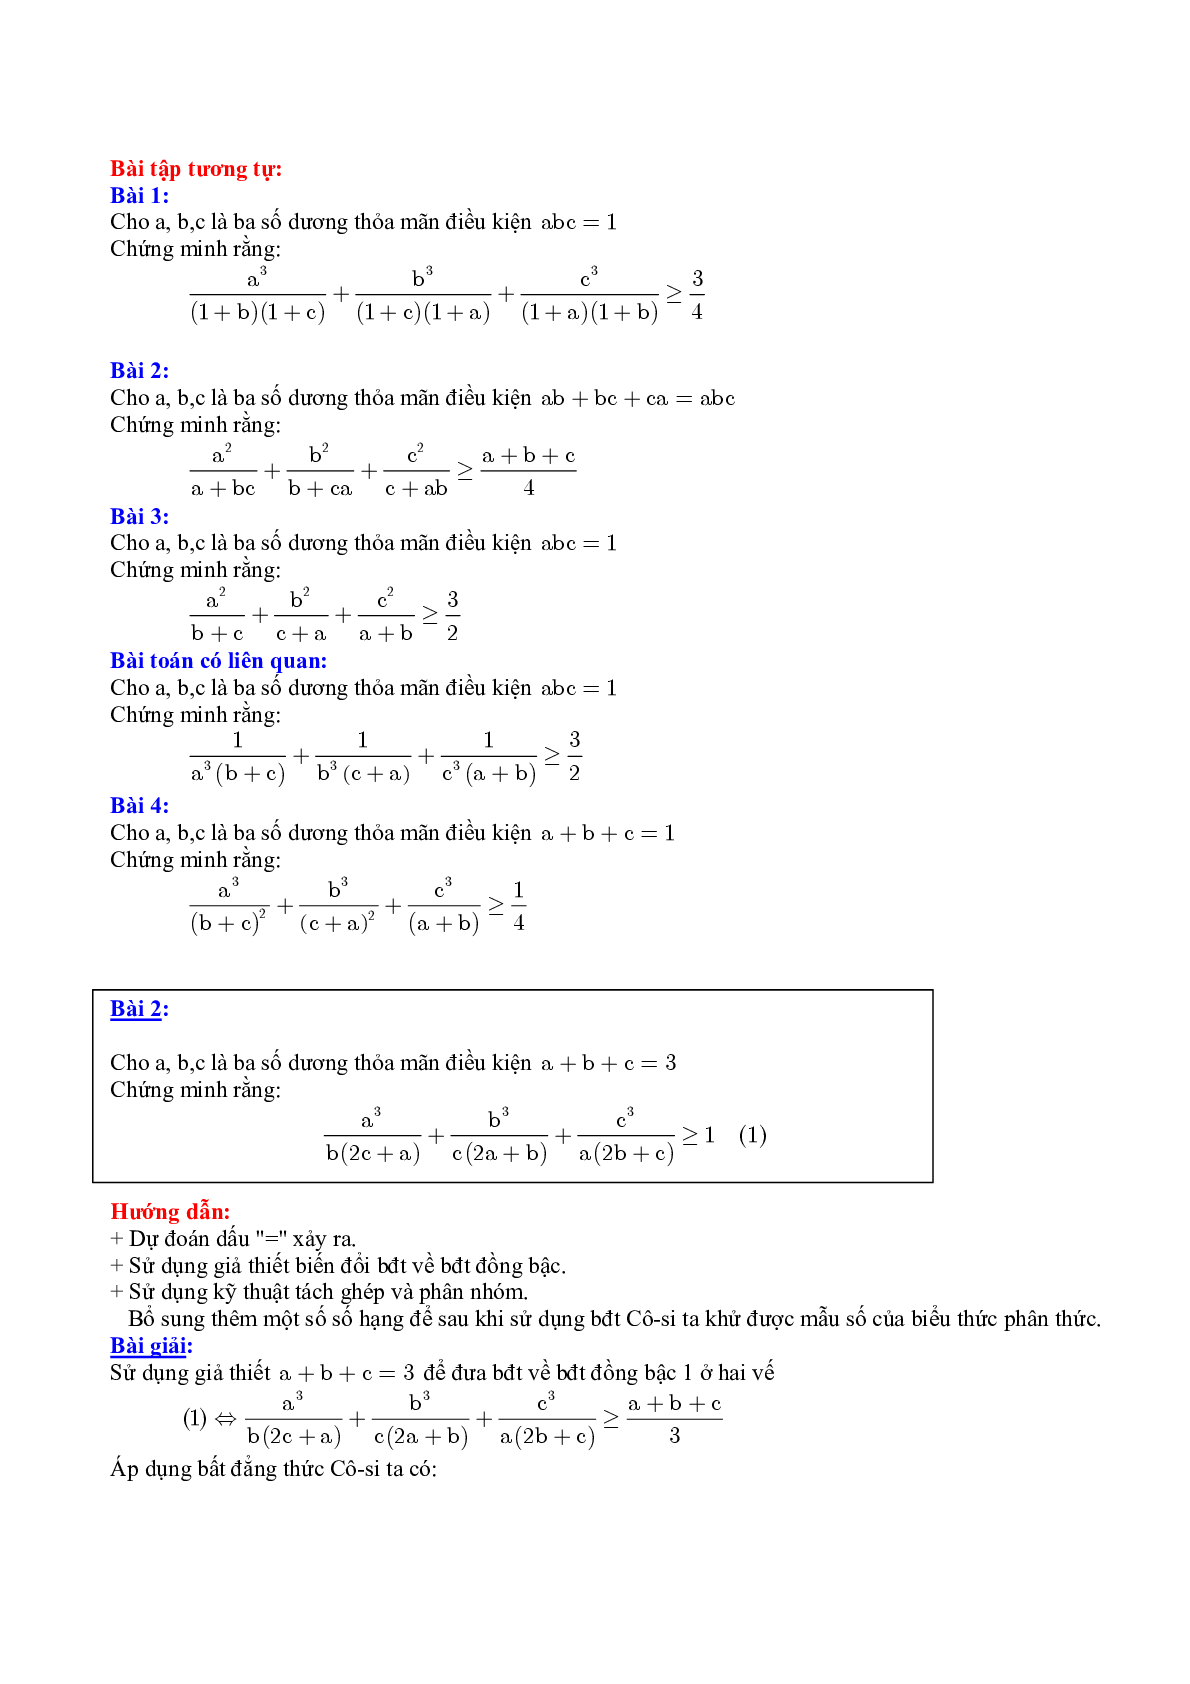 Một số kỹ thuật chứng minh bất đẳng thức hay nhất (trang 2)